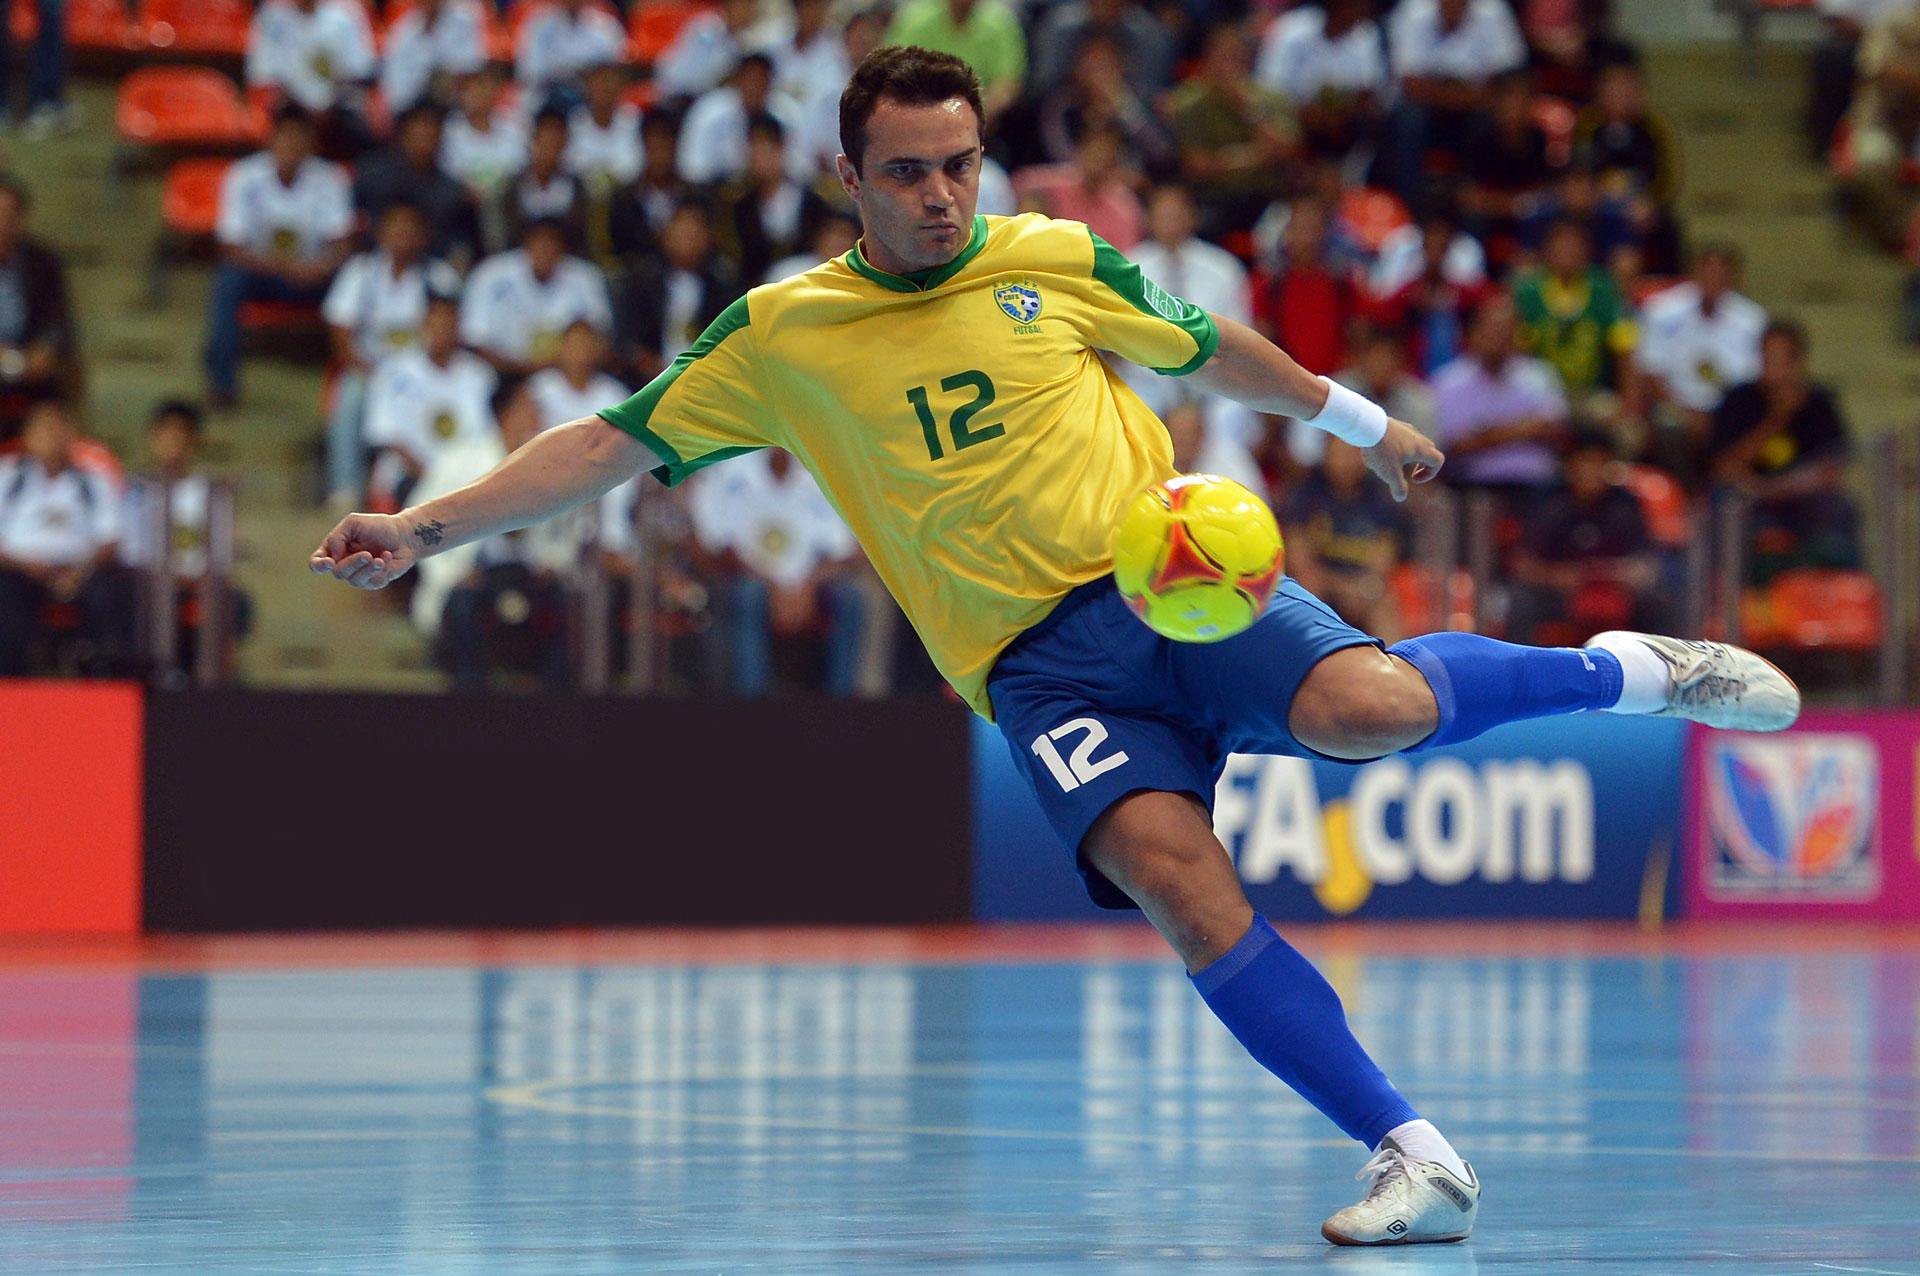 Contratar Falcão Futsal - DS12 Agenciamentos & Eventos